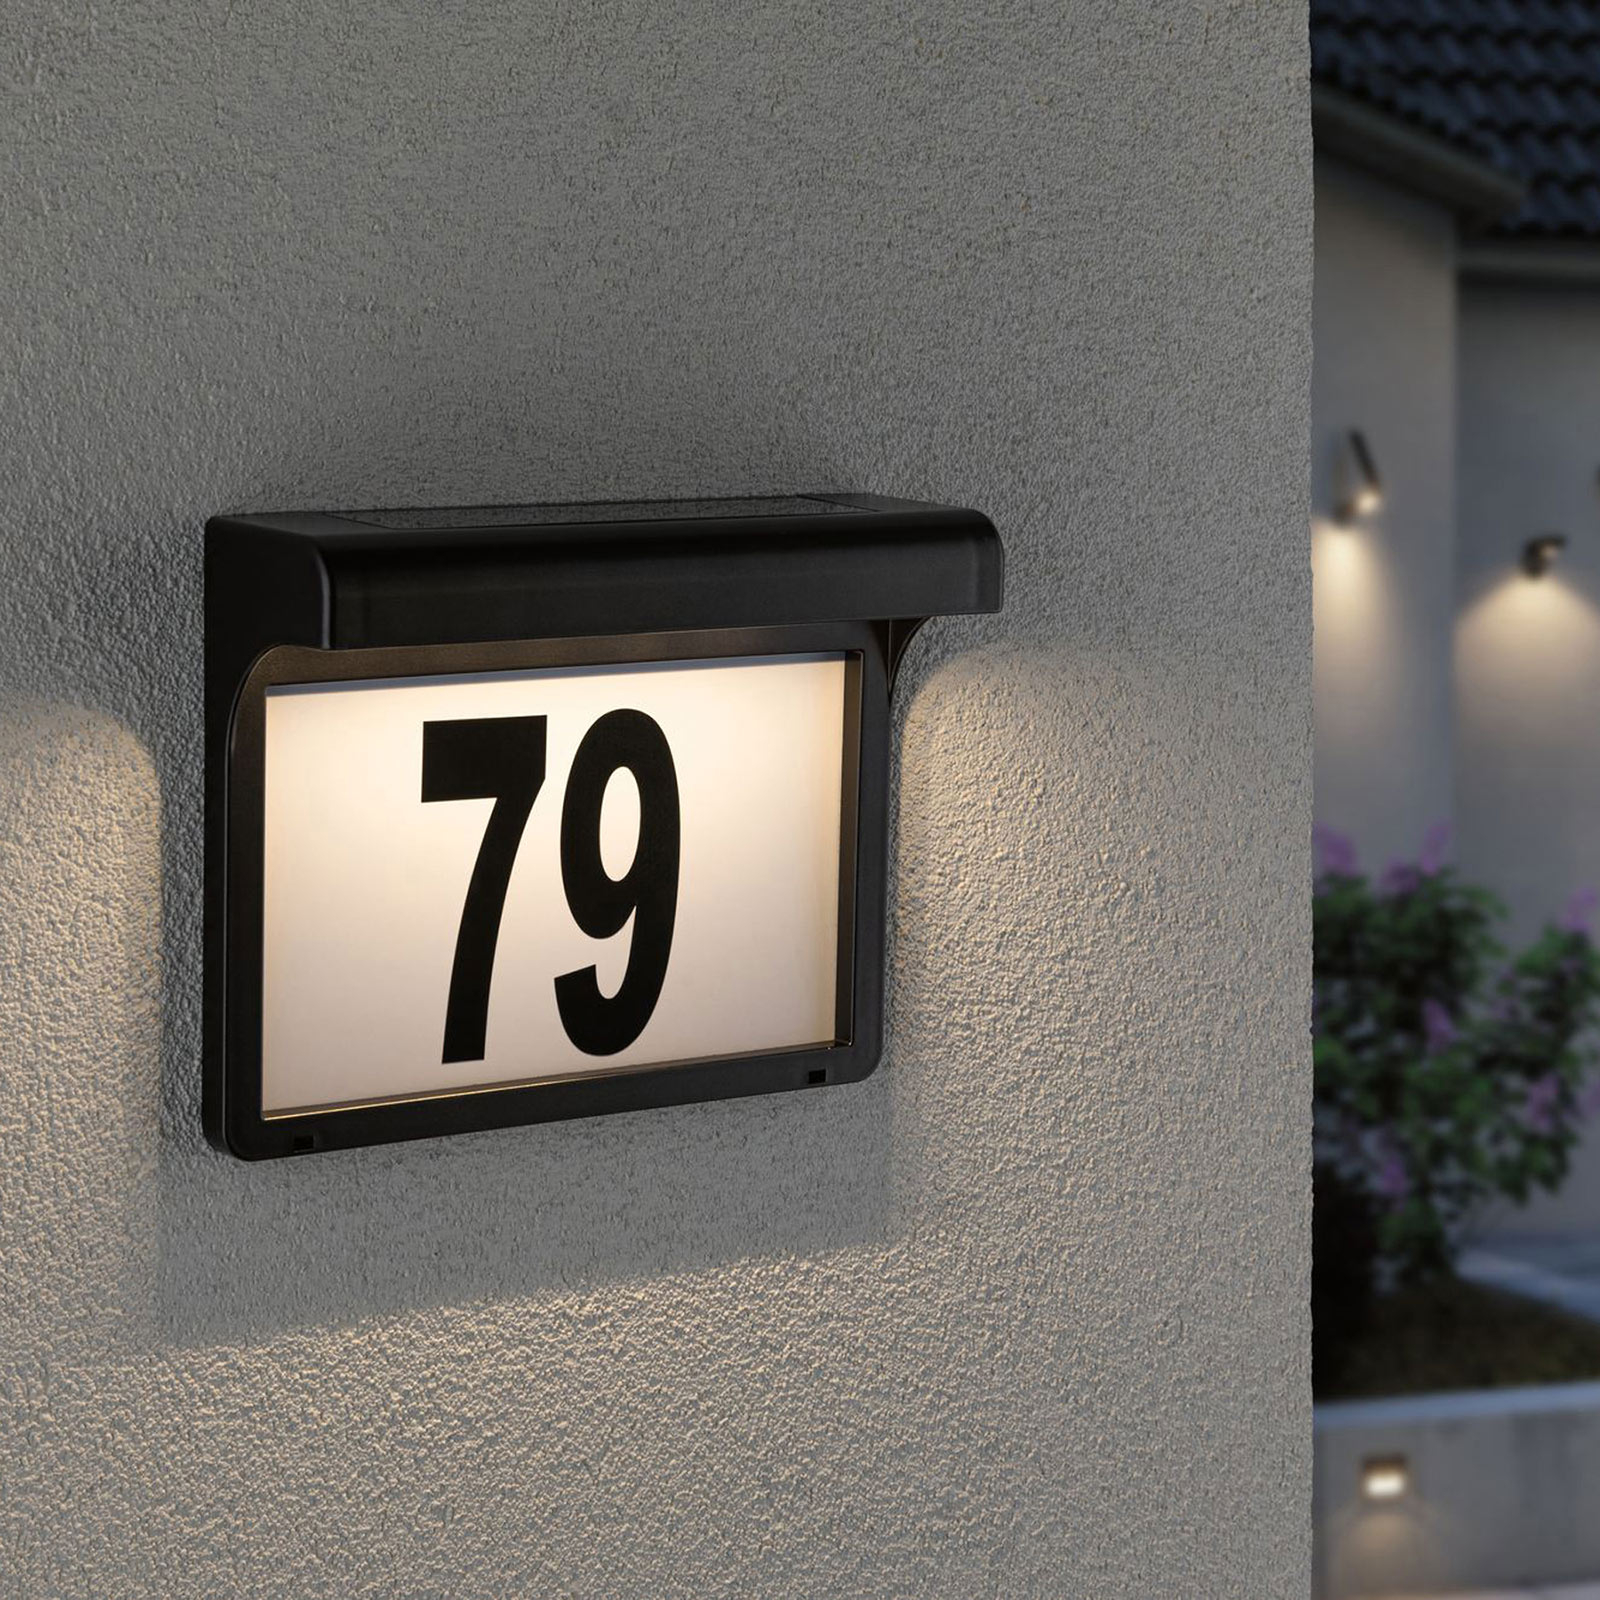 aanvulling tevredenheid is meer dan Paulmann Dayton LED solar-huisnummer lamp | Lampen24.nl